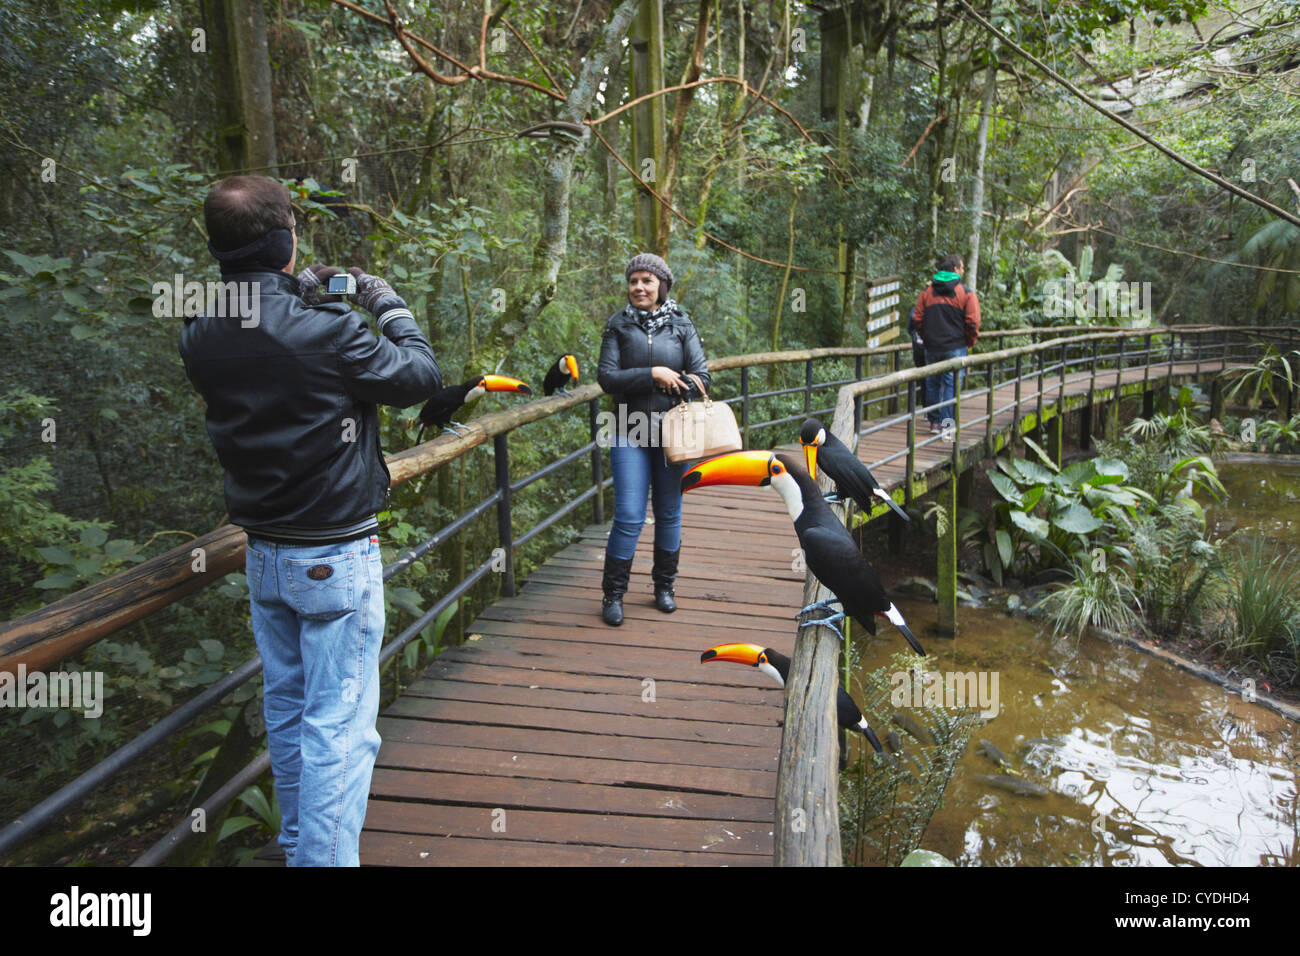 Les personnes prenant photo de toucans à Parque das Aves (Parc des Oiseaux), Iguacu, Parana, Brésil Banque D'Images